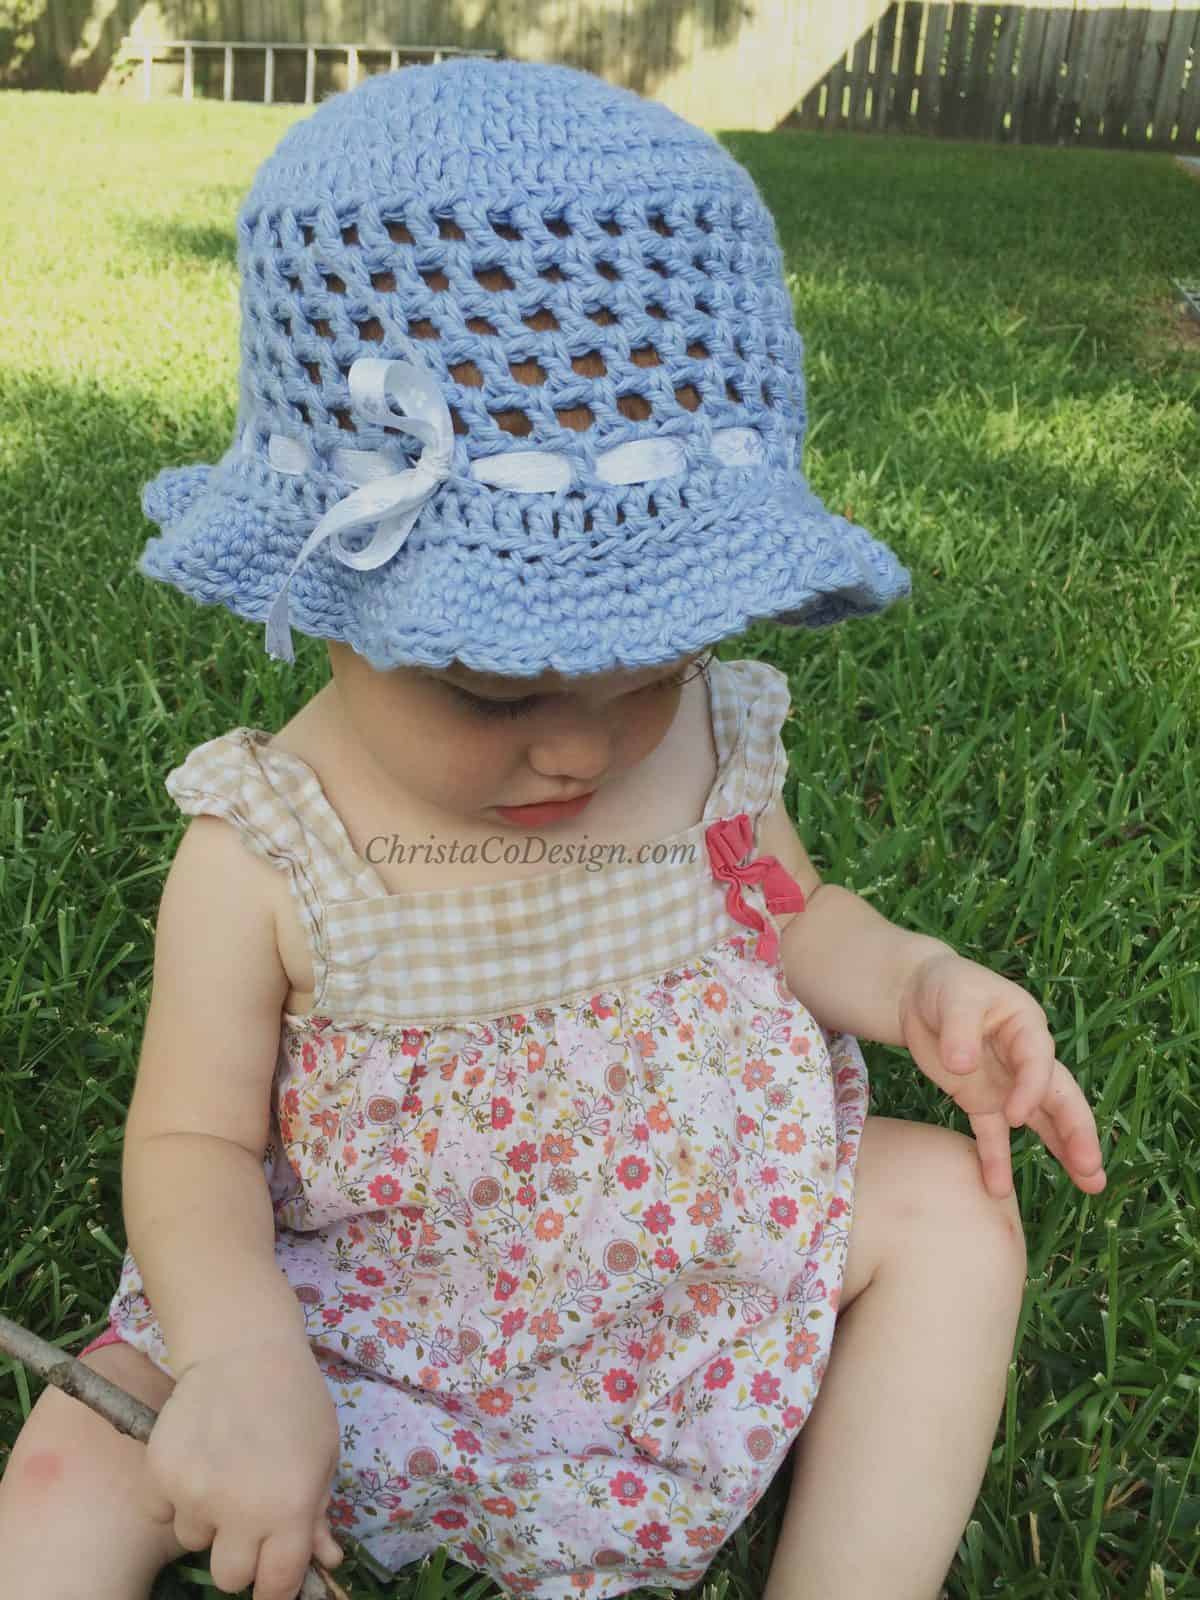 Toddler girl in blue crochet sun hat on grass.